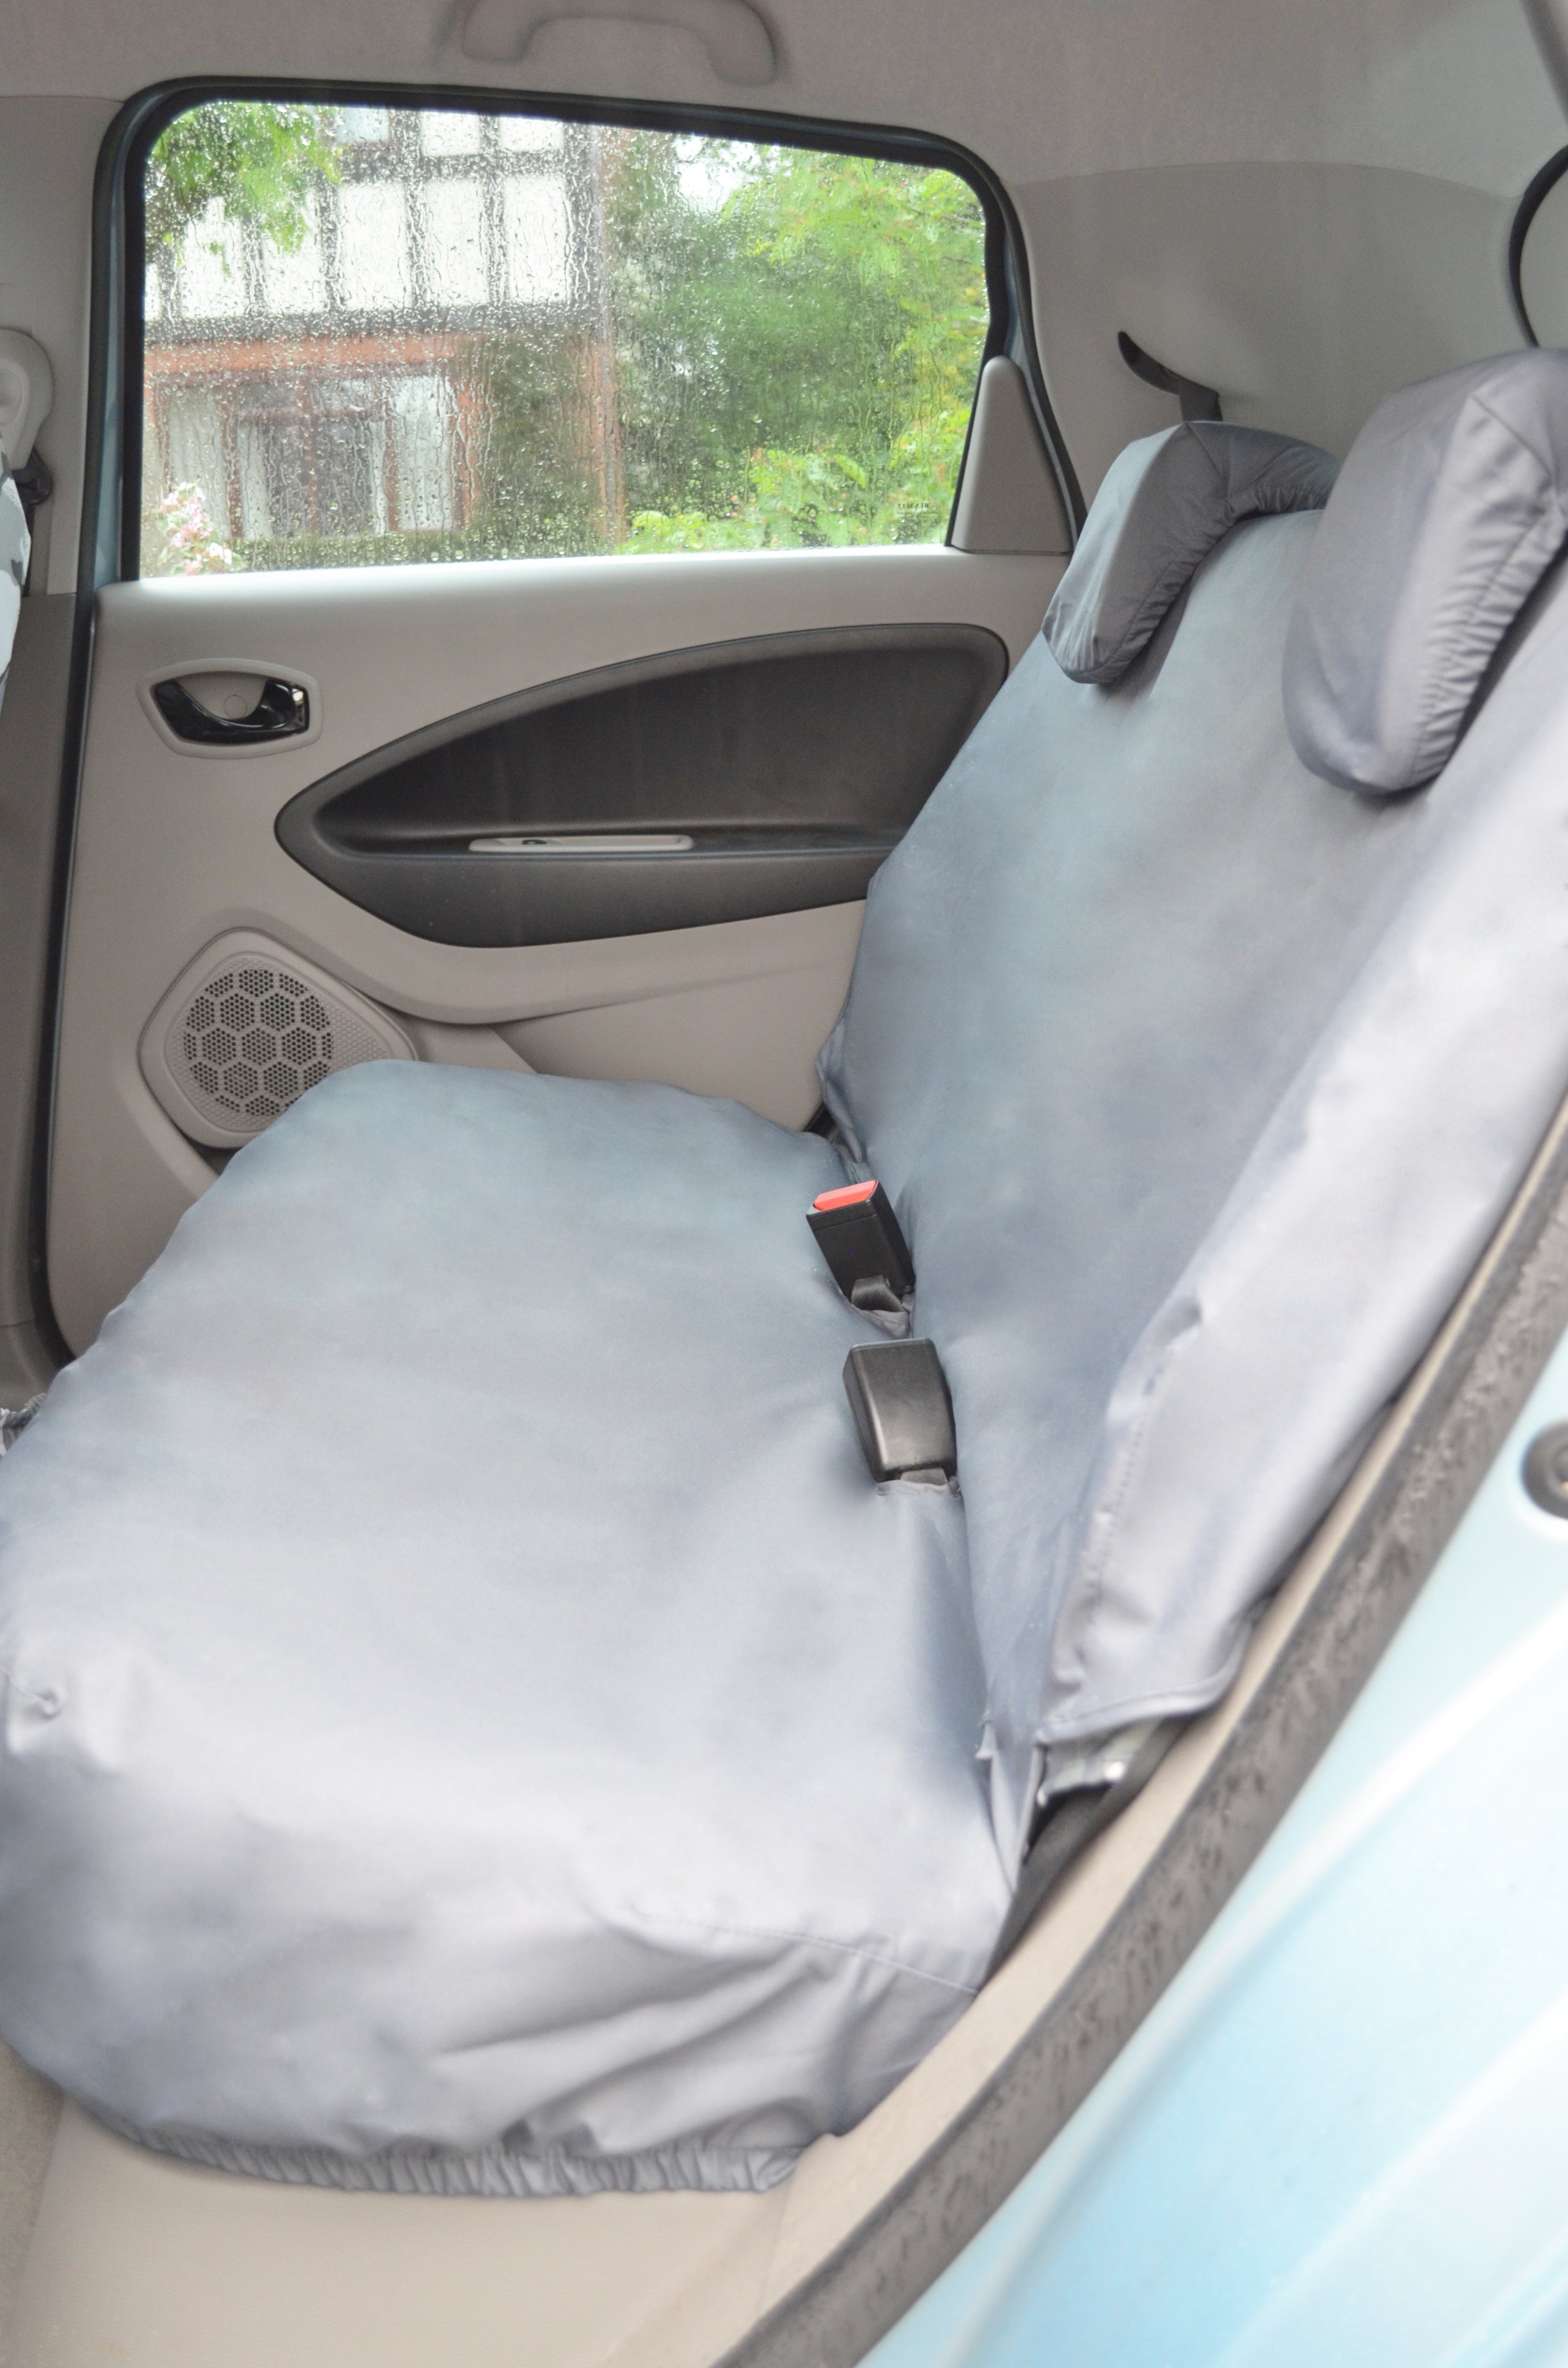 FOR Renault Zoe Black & Grey Car Seat Covers Protectors Full Set